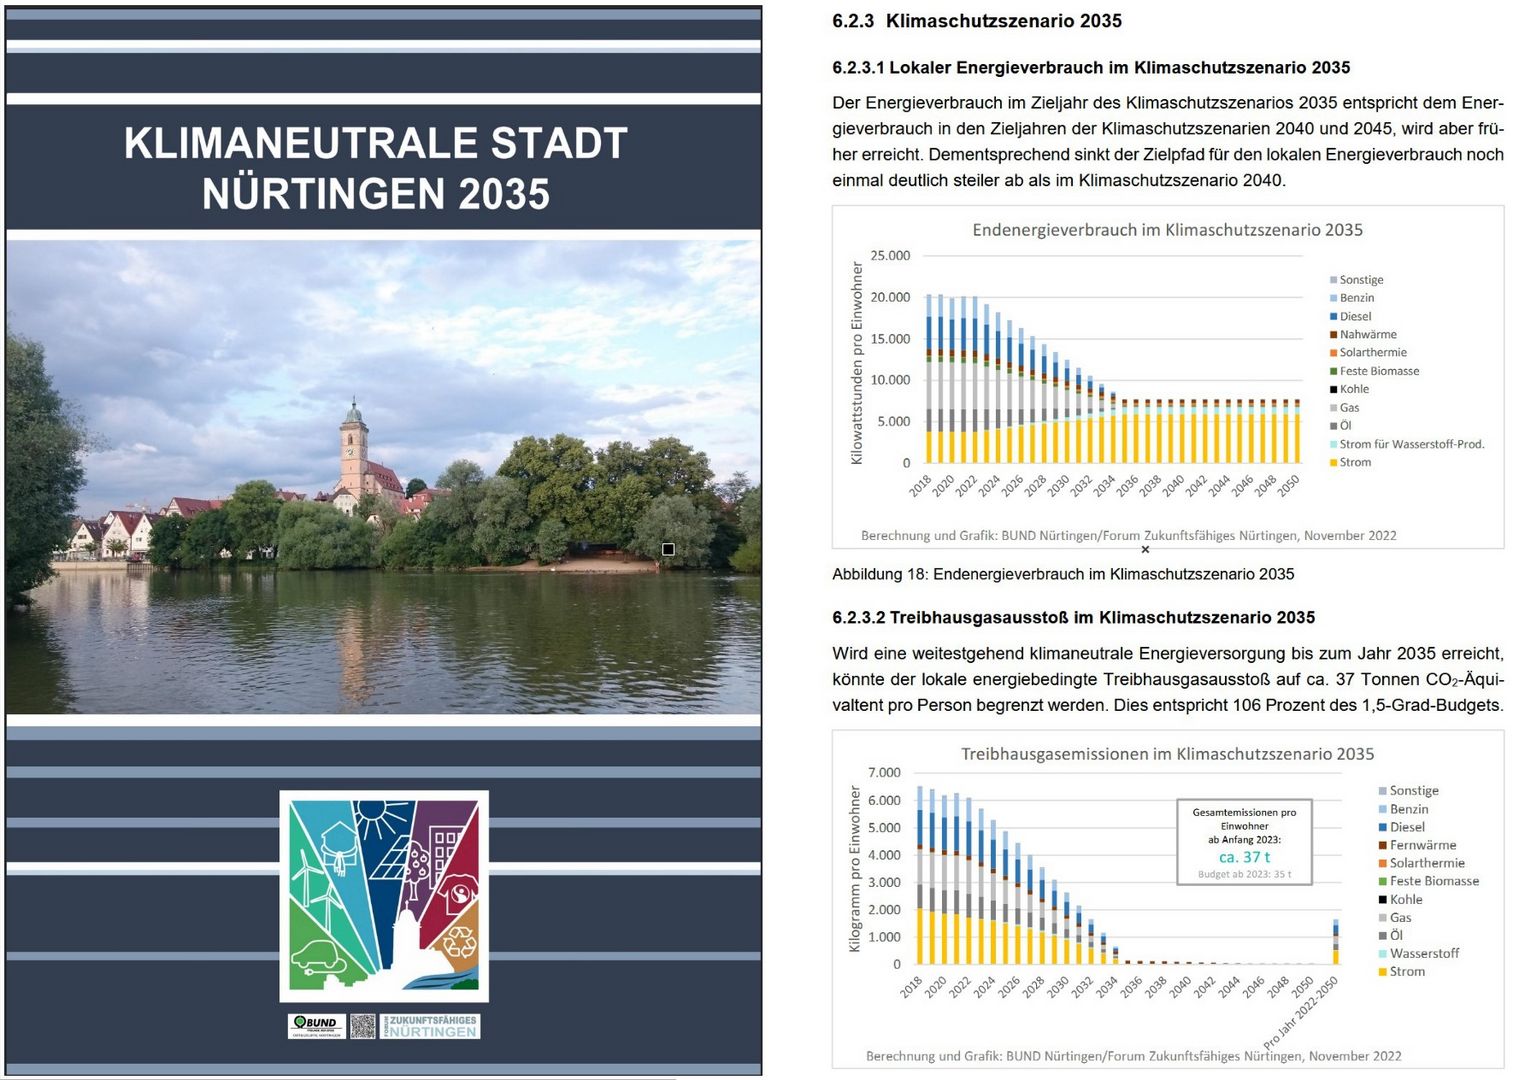 Auszug aus der Studie Klimaneutrale Stadt Nürtingen 2035